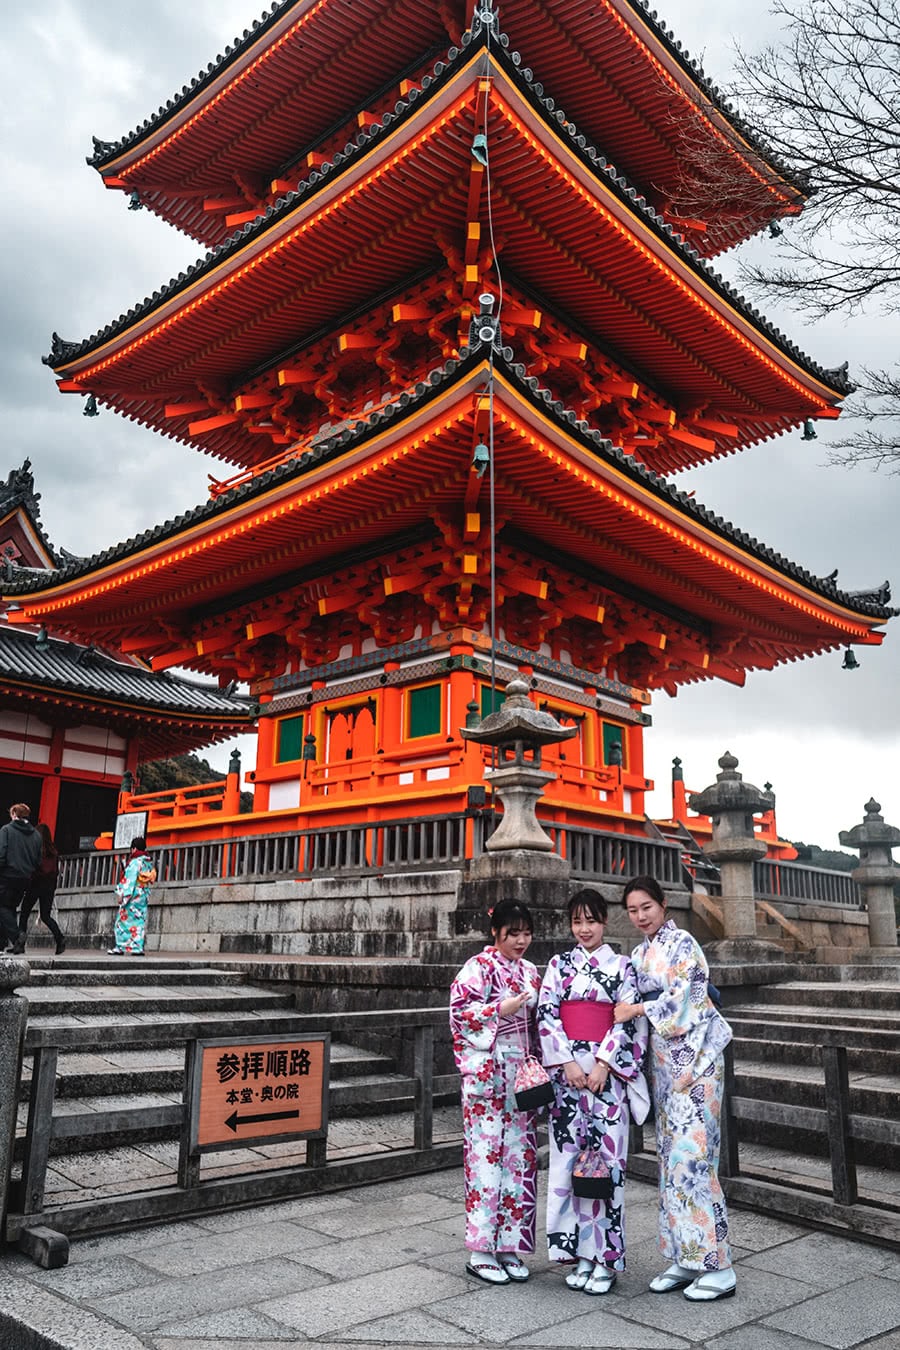 Japanese girls dressed in Kimonos at Kiyomizu-dera Temple in Kyoto, Japan.